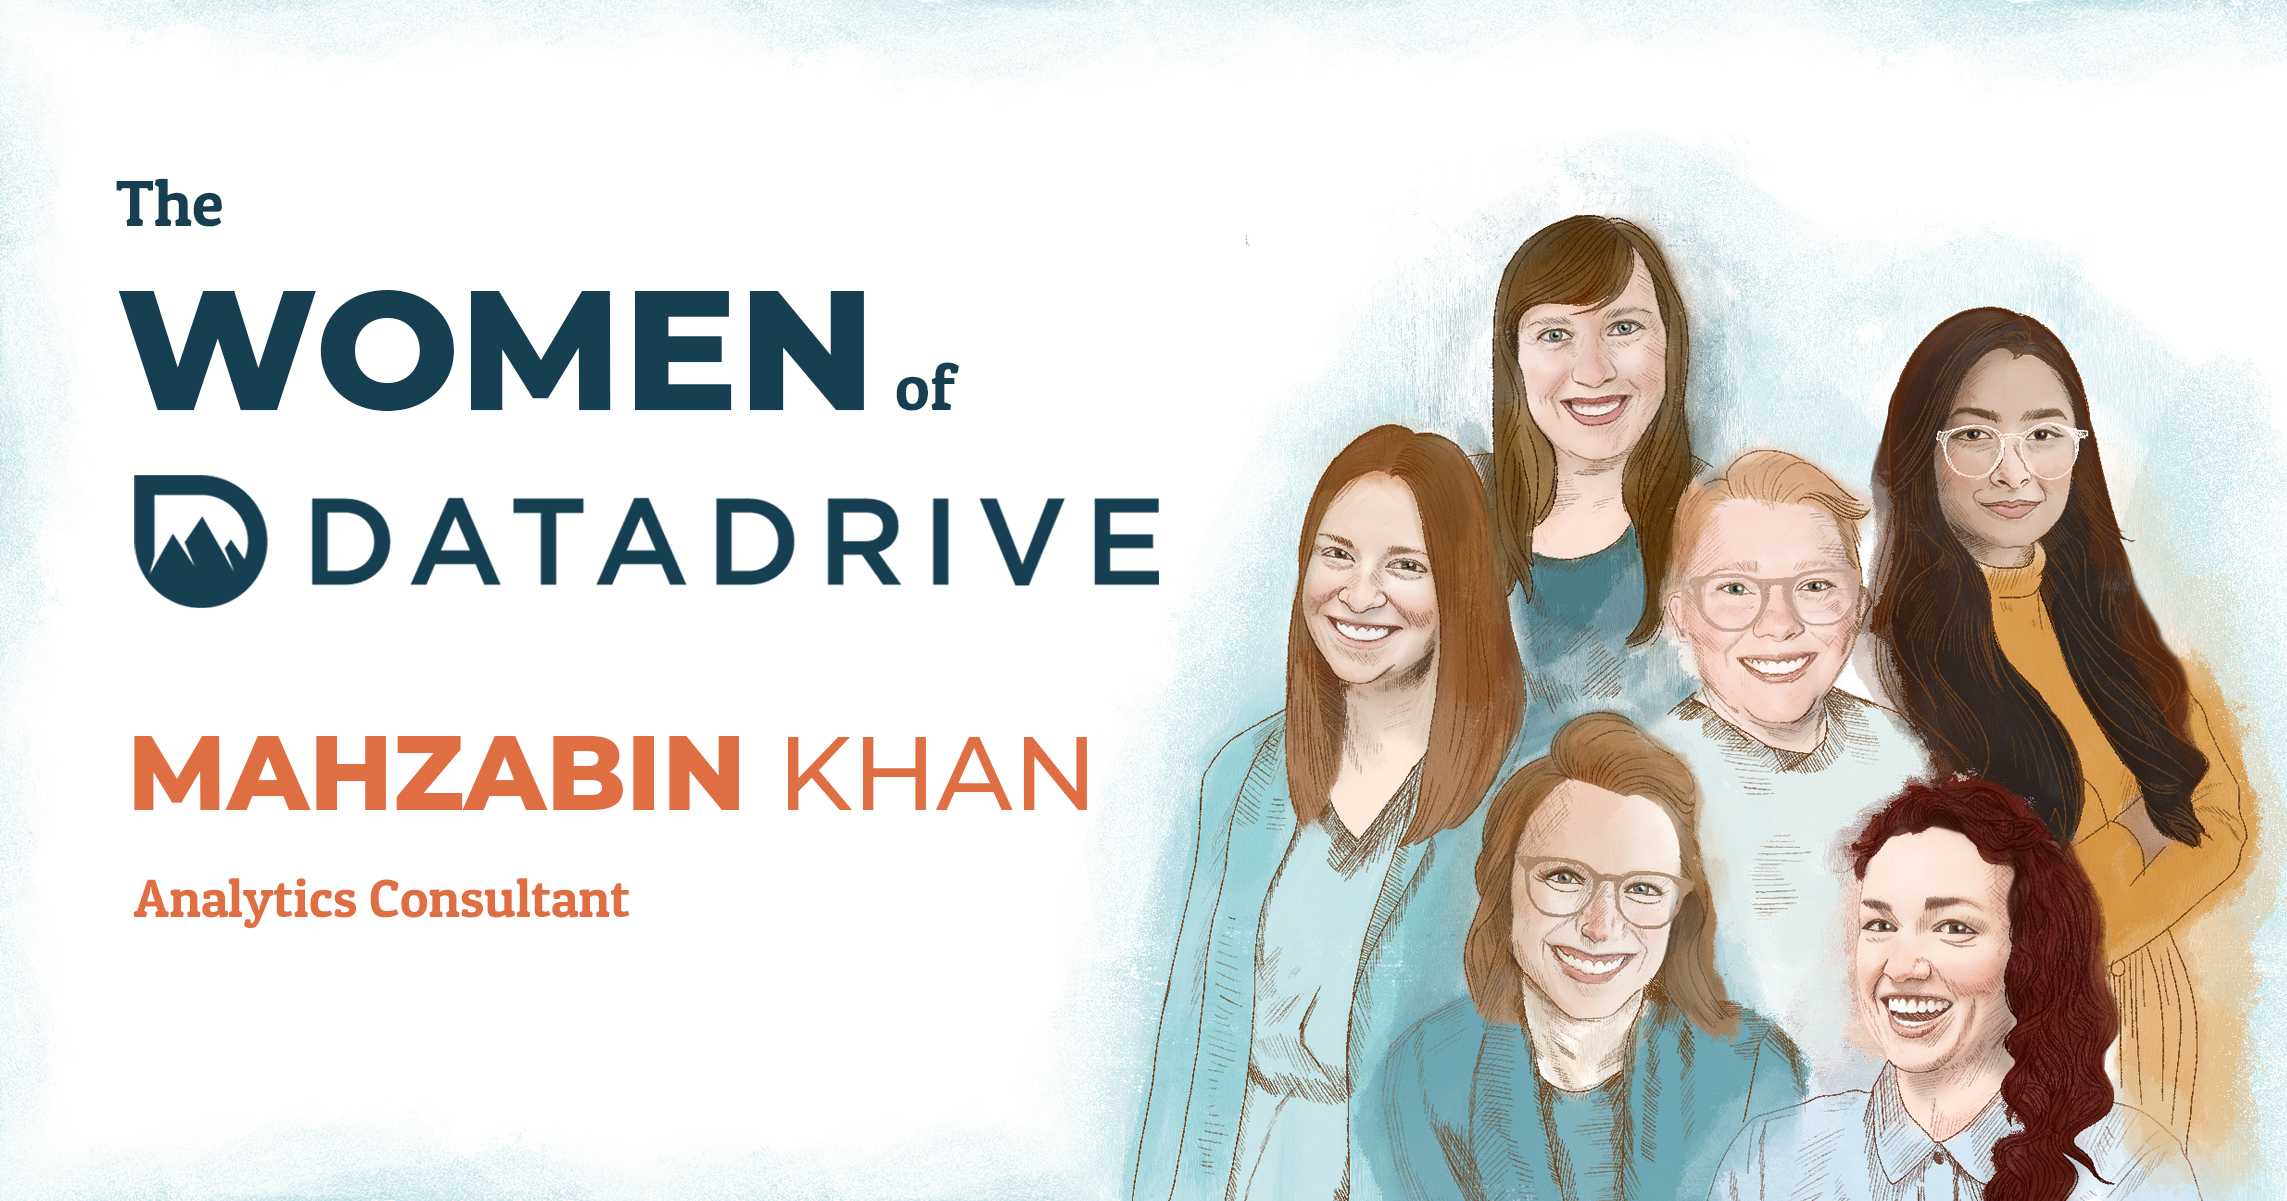 The Women of DataDrive - Mahzabin Khan